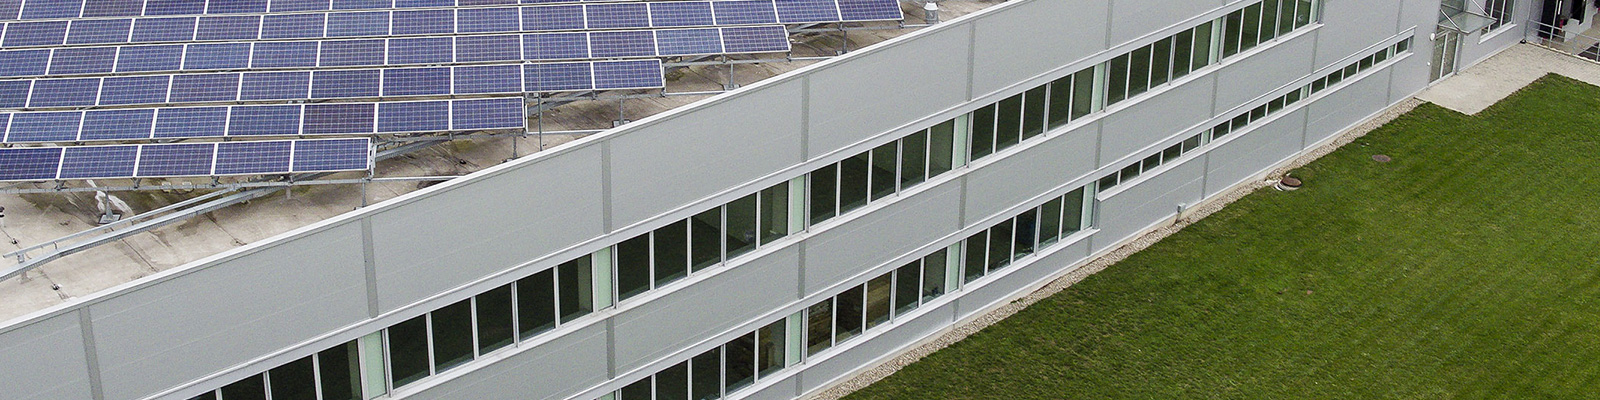 Commerciële PV Rooftop installaties